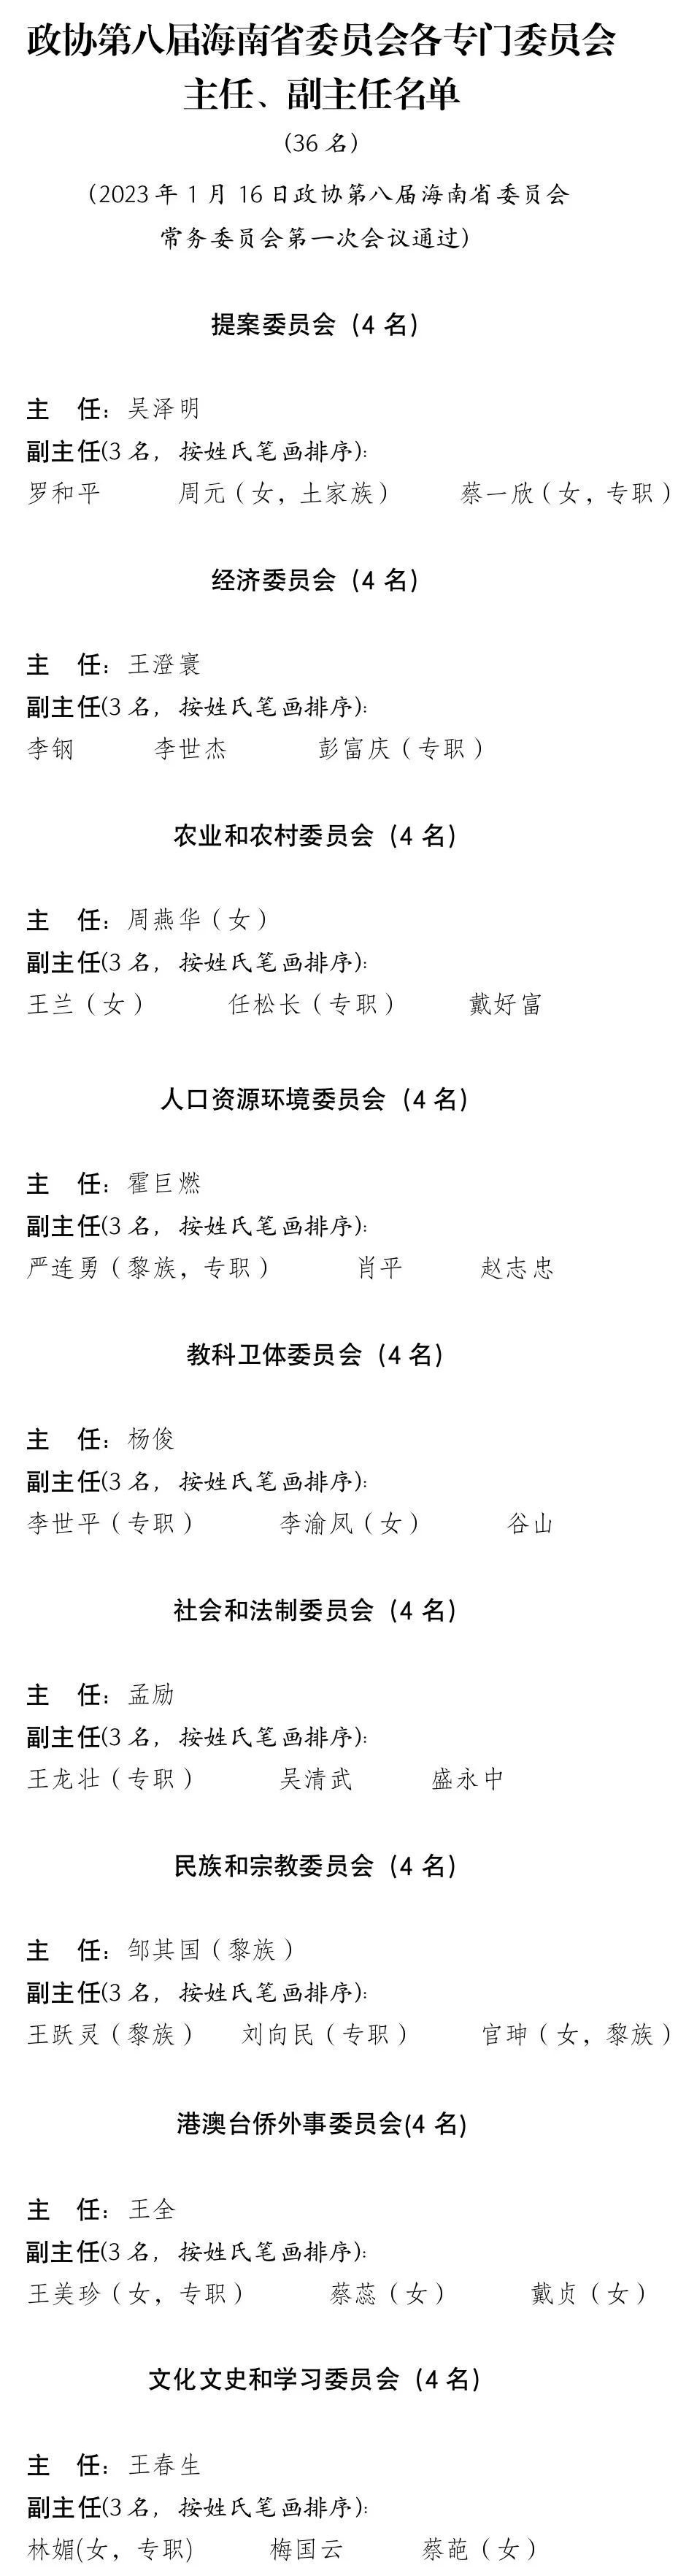 政协第八届海南省委员会各专委会主任、副主任名单